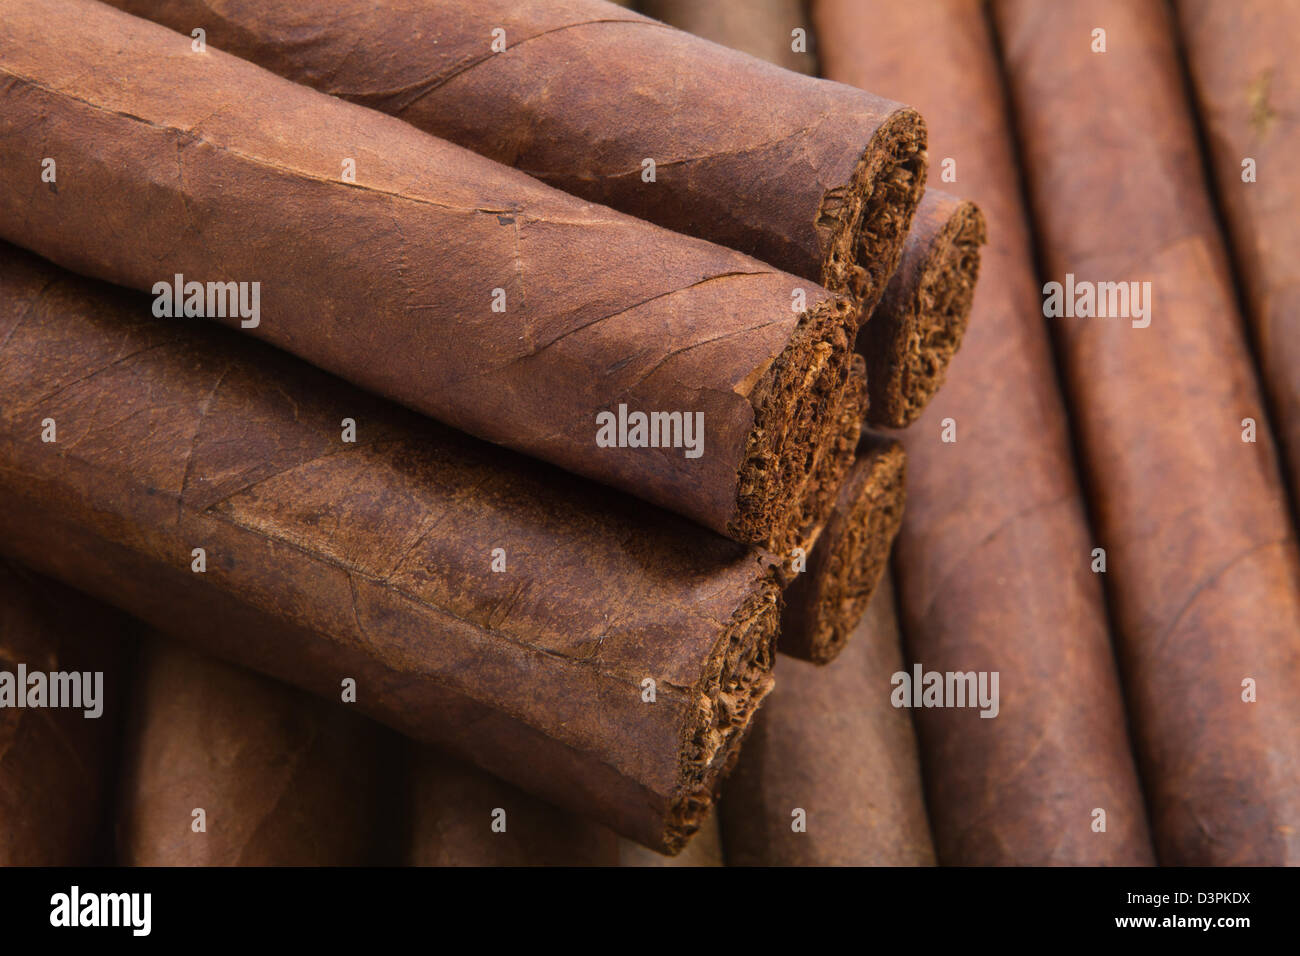 Tabaco Cigars tobacco maduro shades of cigar binder Stock Photo